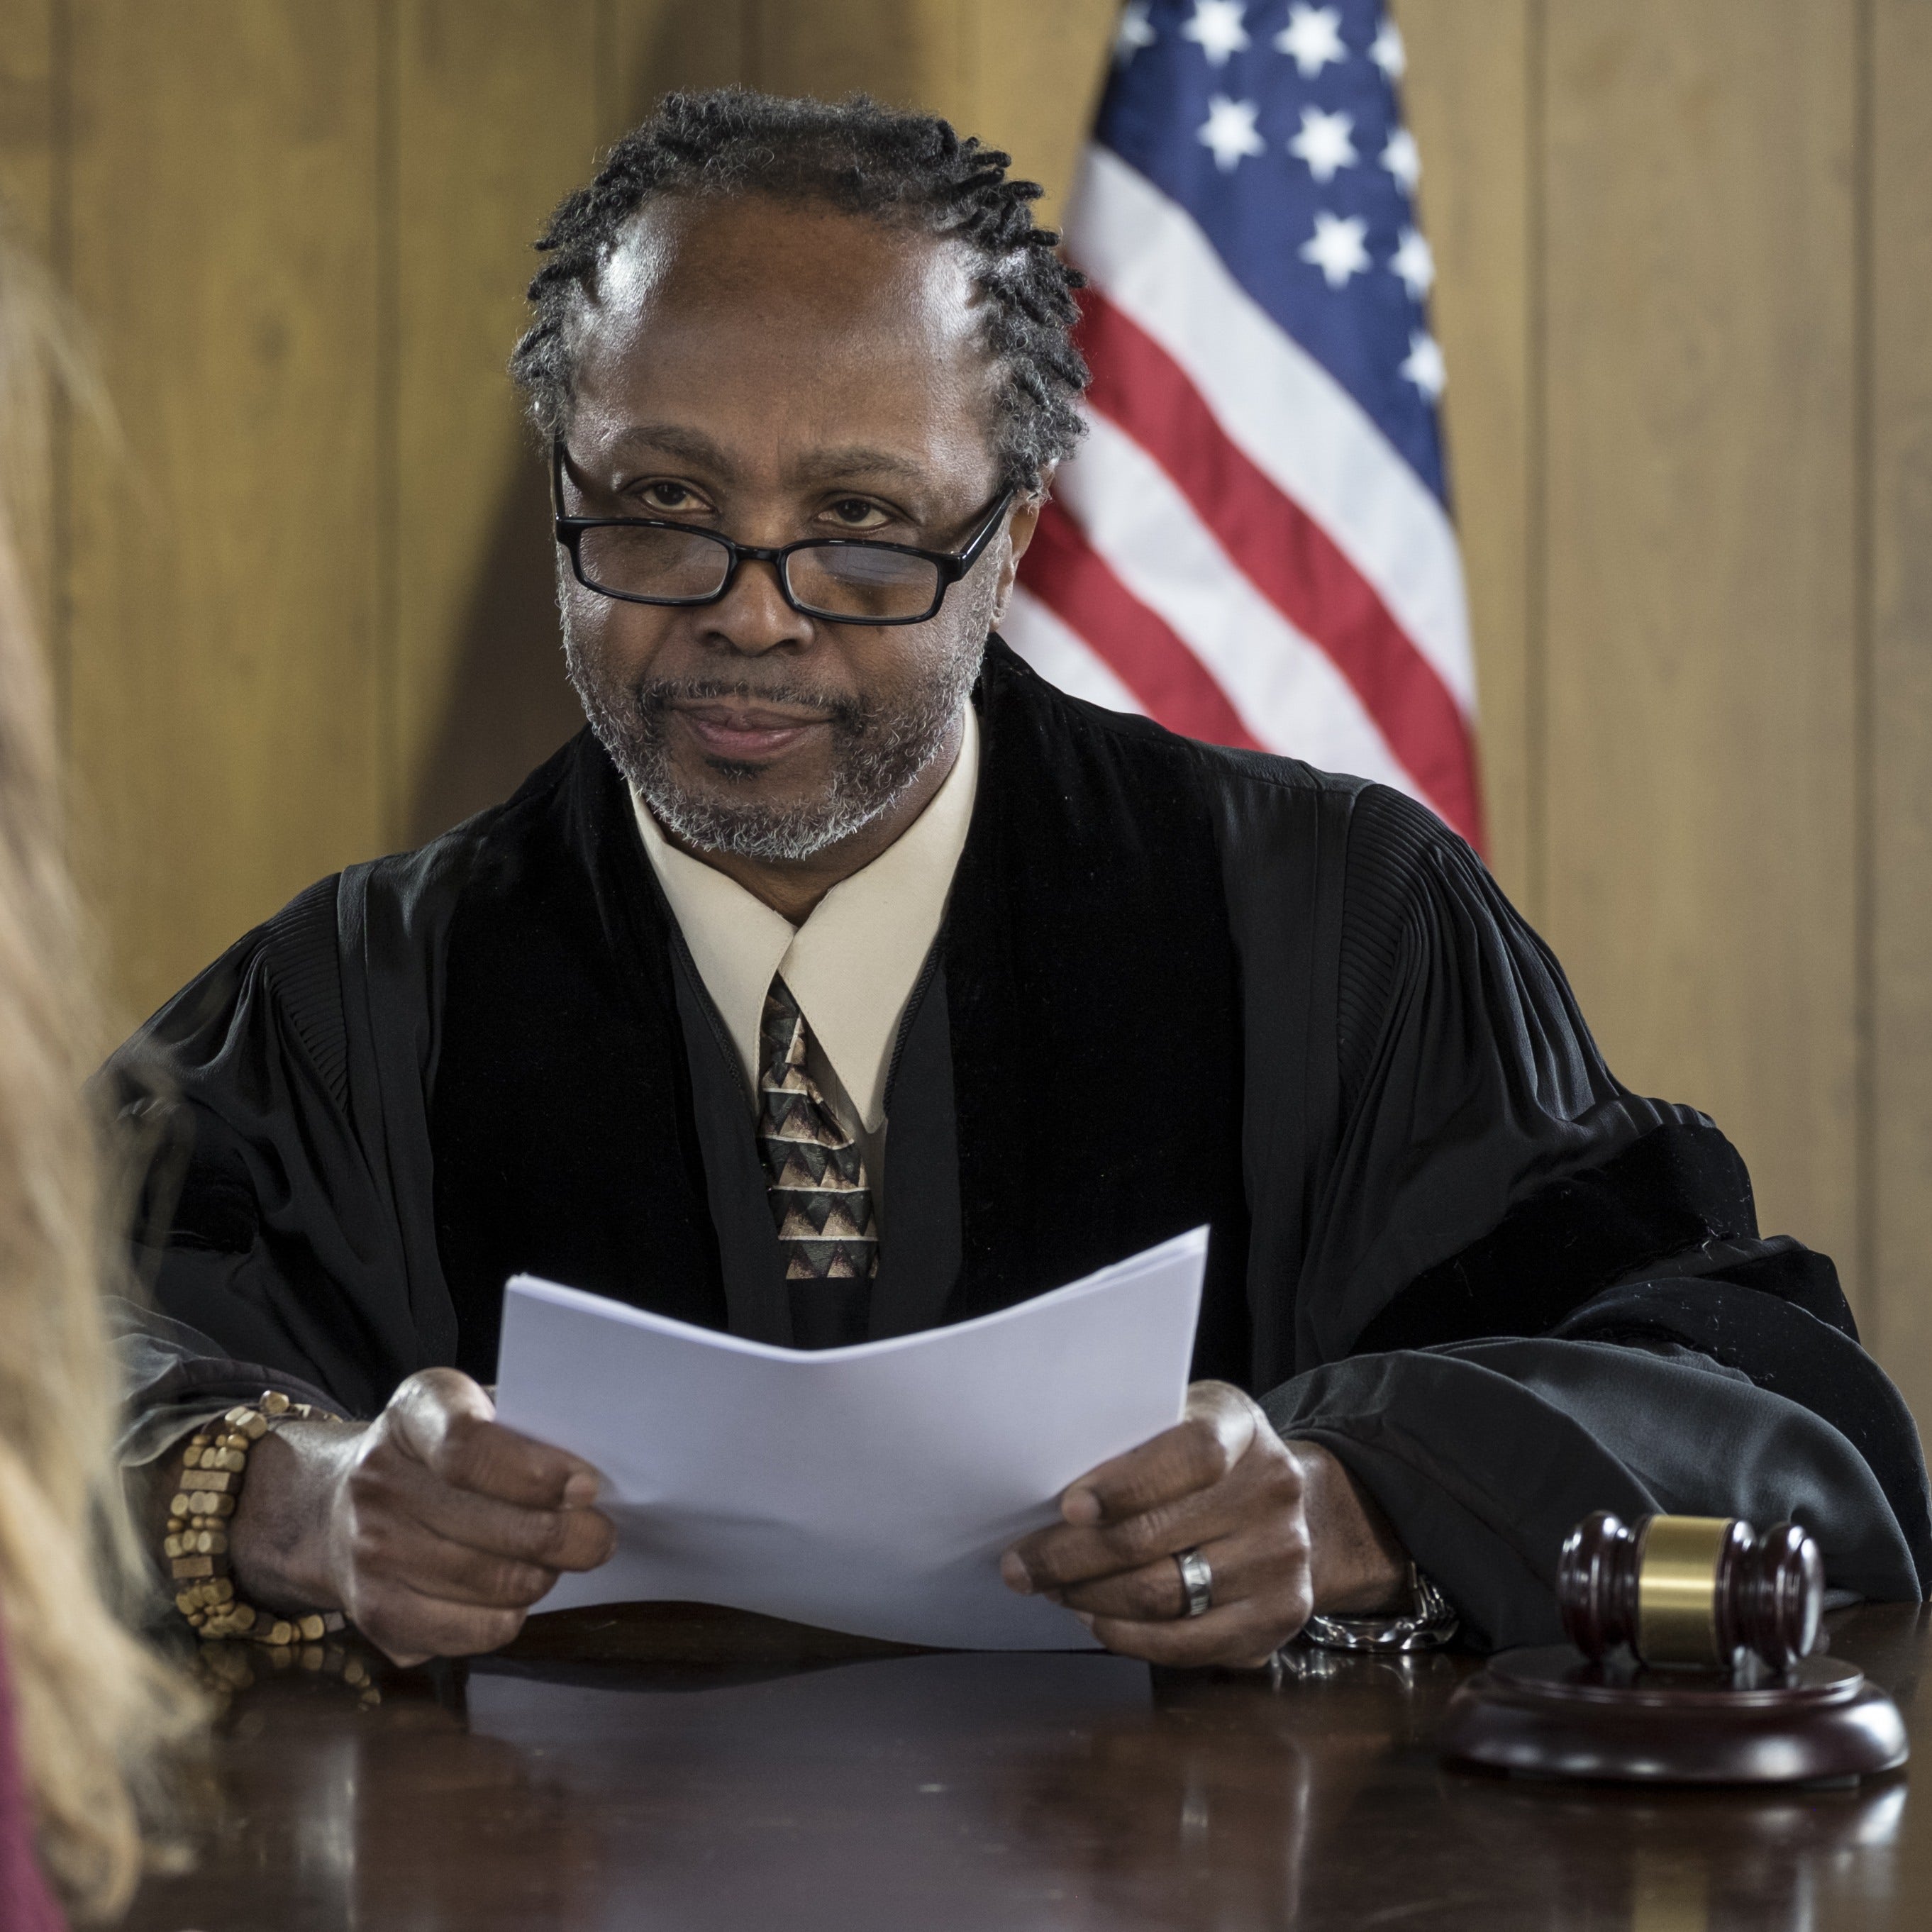 unimpressed judge in court